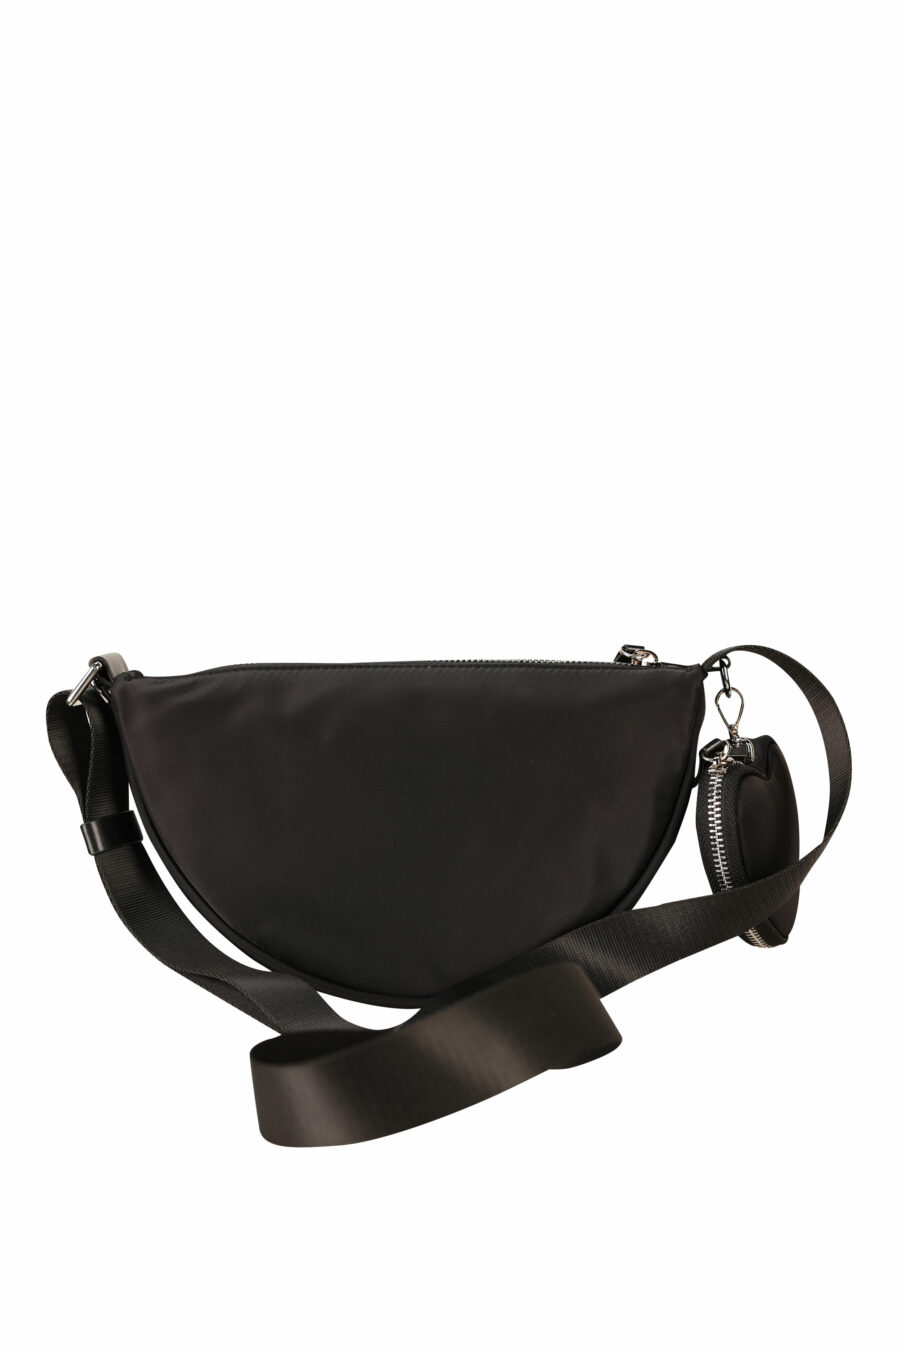 Black shoulder bag with "icon darling" logo - 8055777276310 2